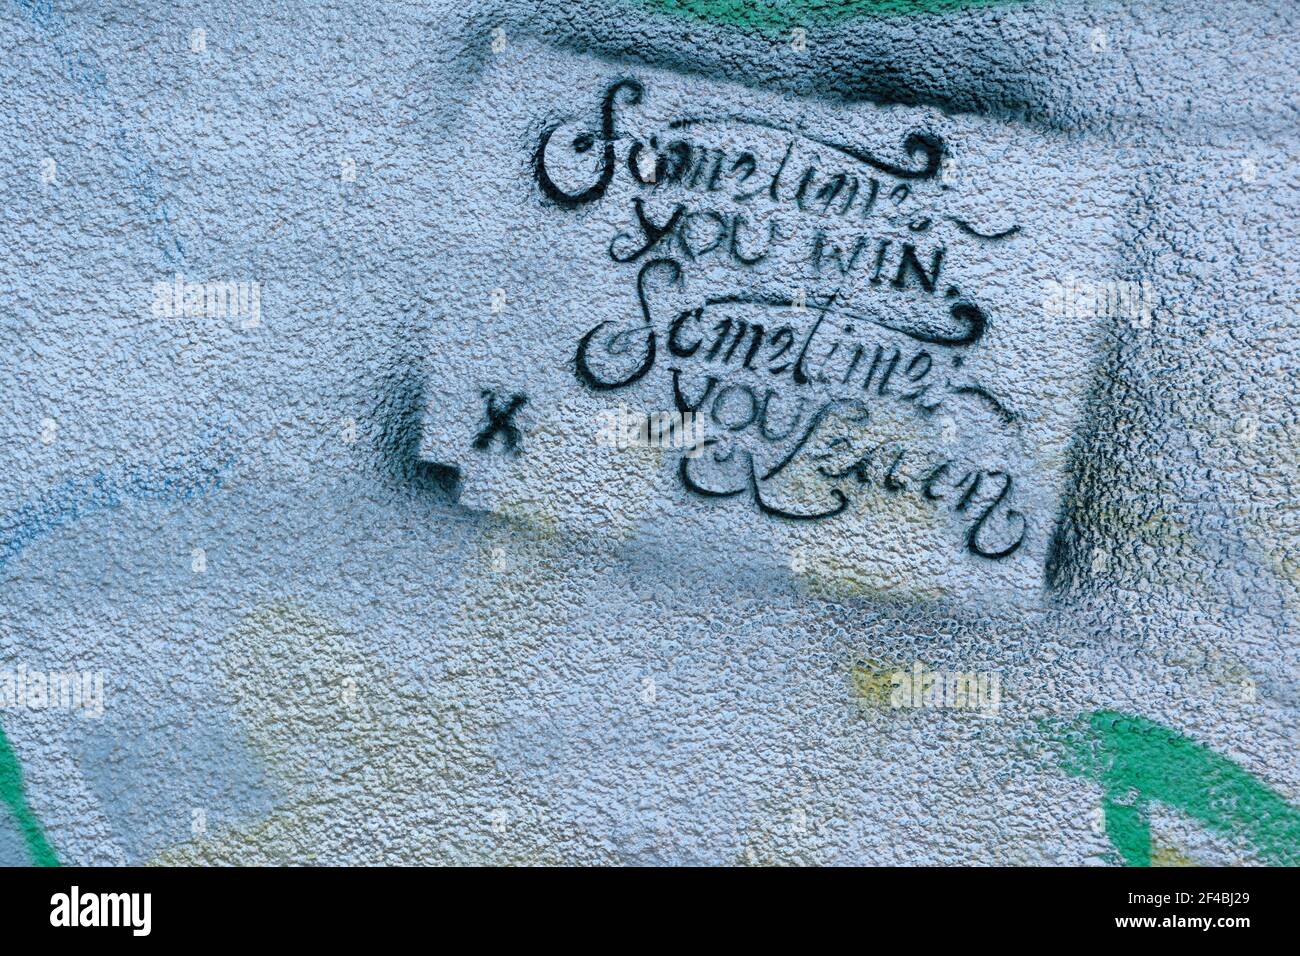 Schablonen-Graffiti an einer Hauswand - irgendwann gewinnt man, mal lernt man, Hamburg, Deutschland. Stockfoto